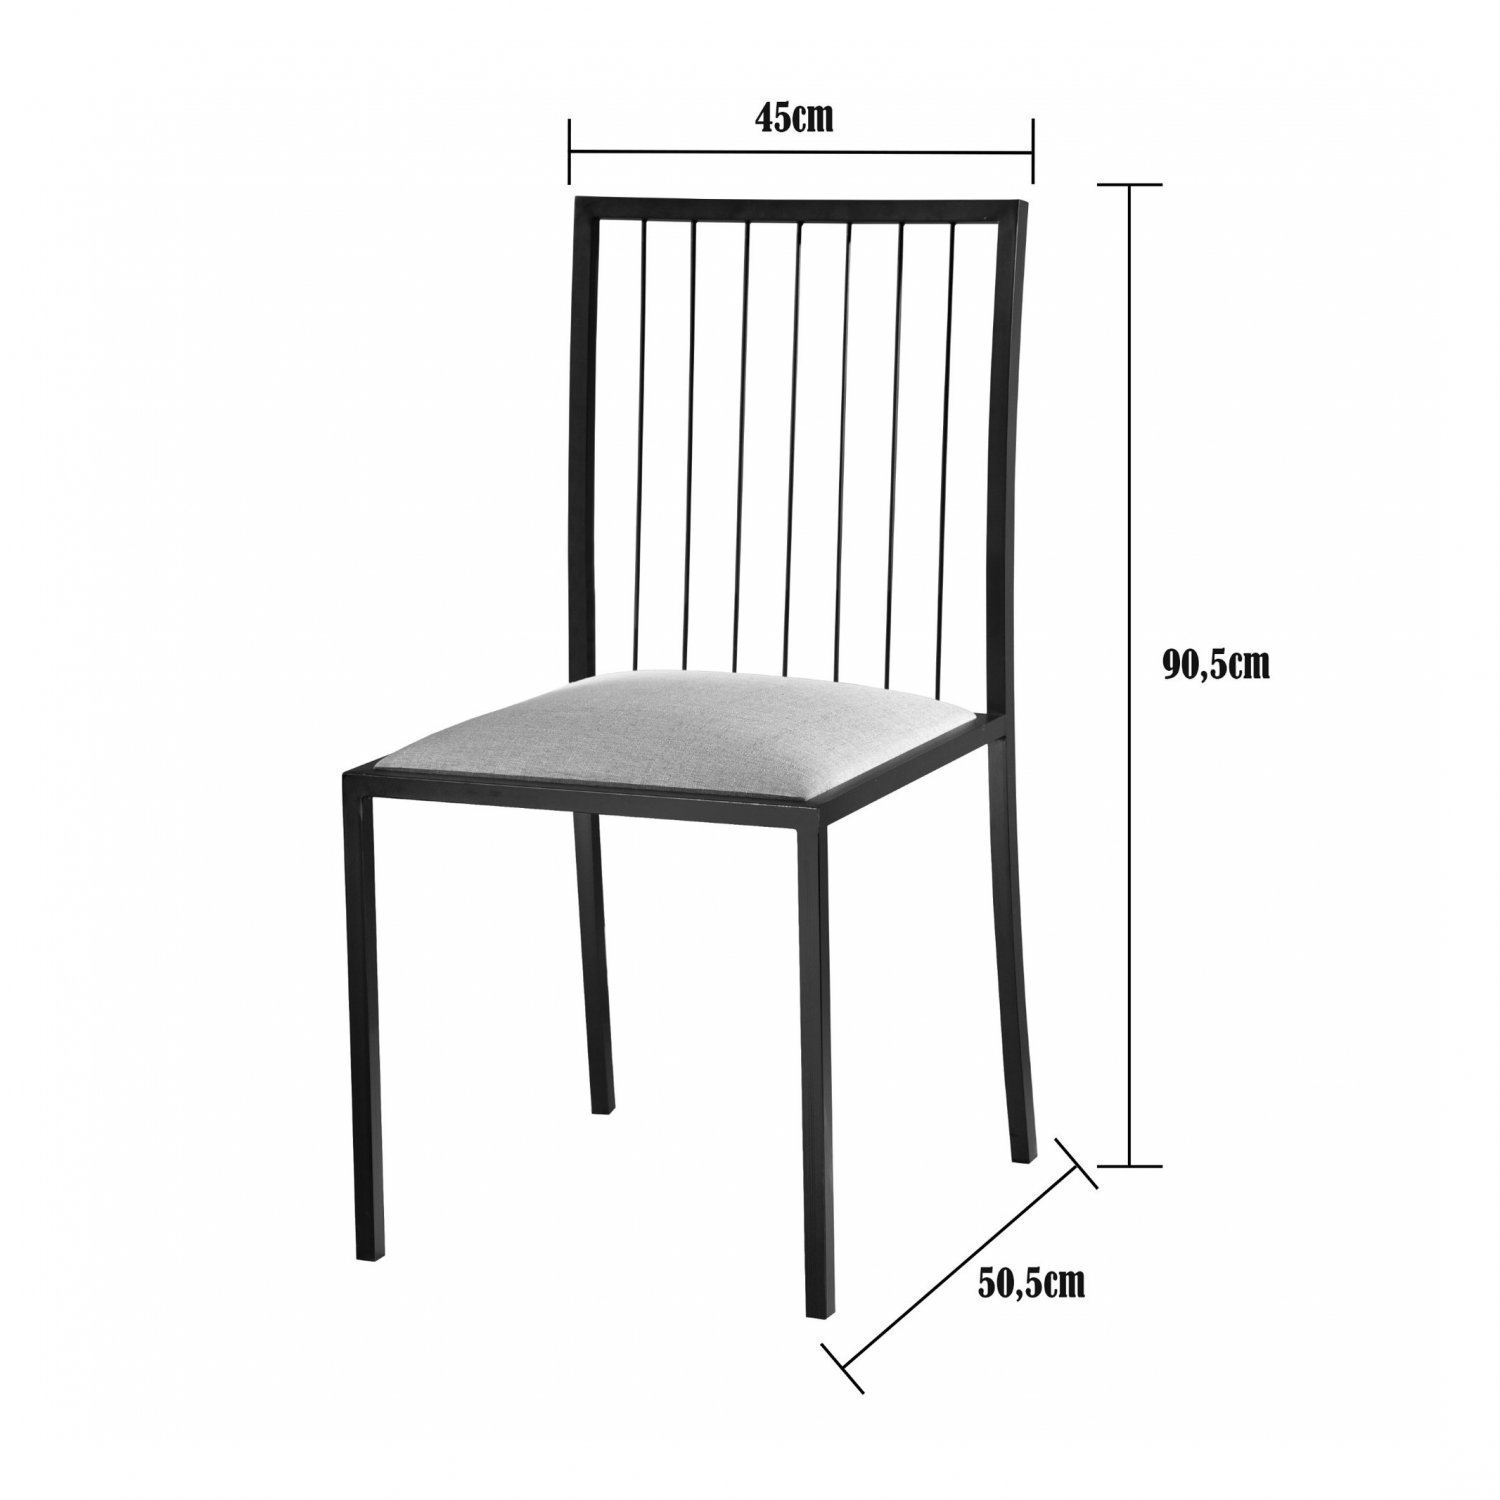 Kit 6 Cadeiras em Aço Atos Mais Decor - 4